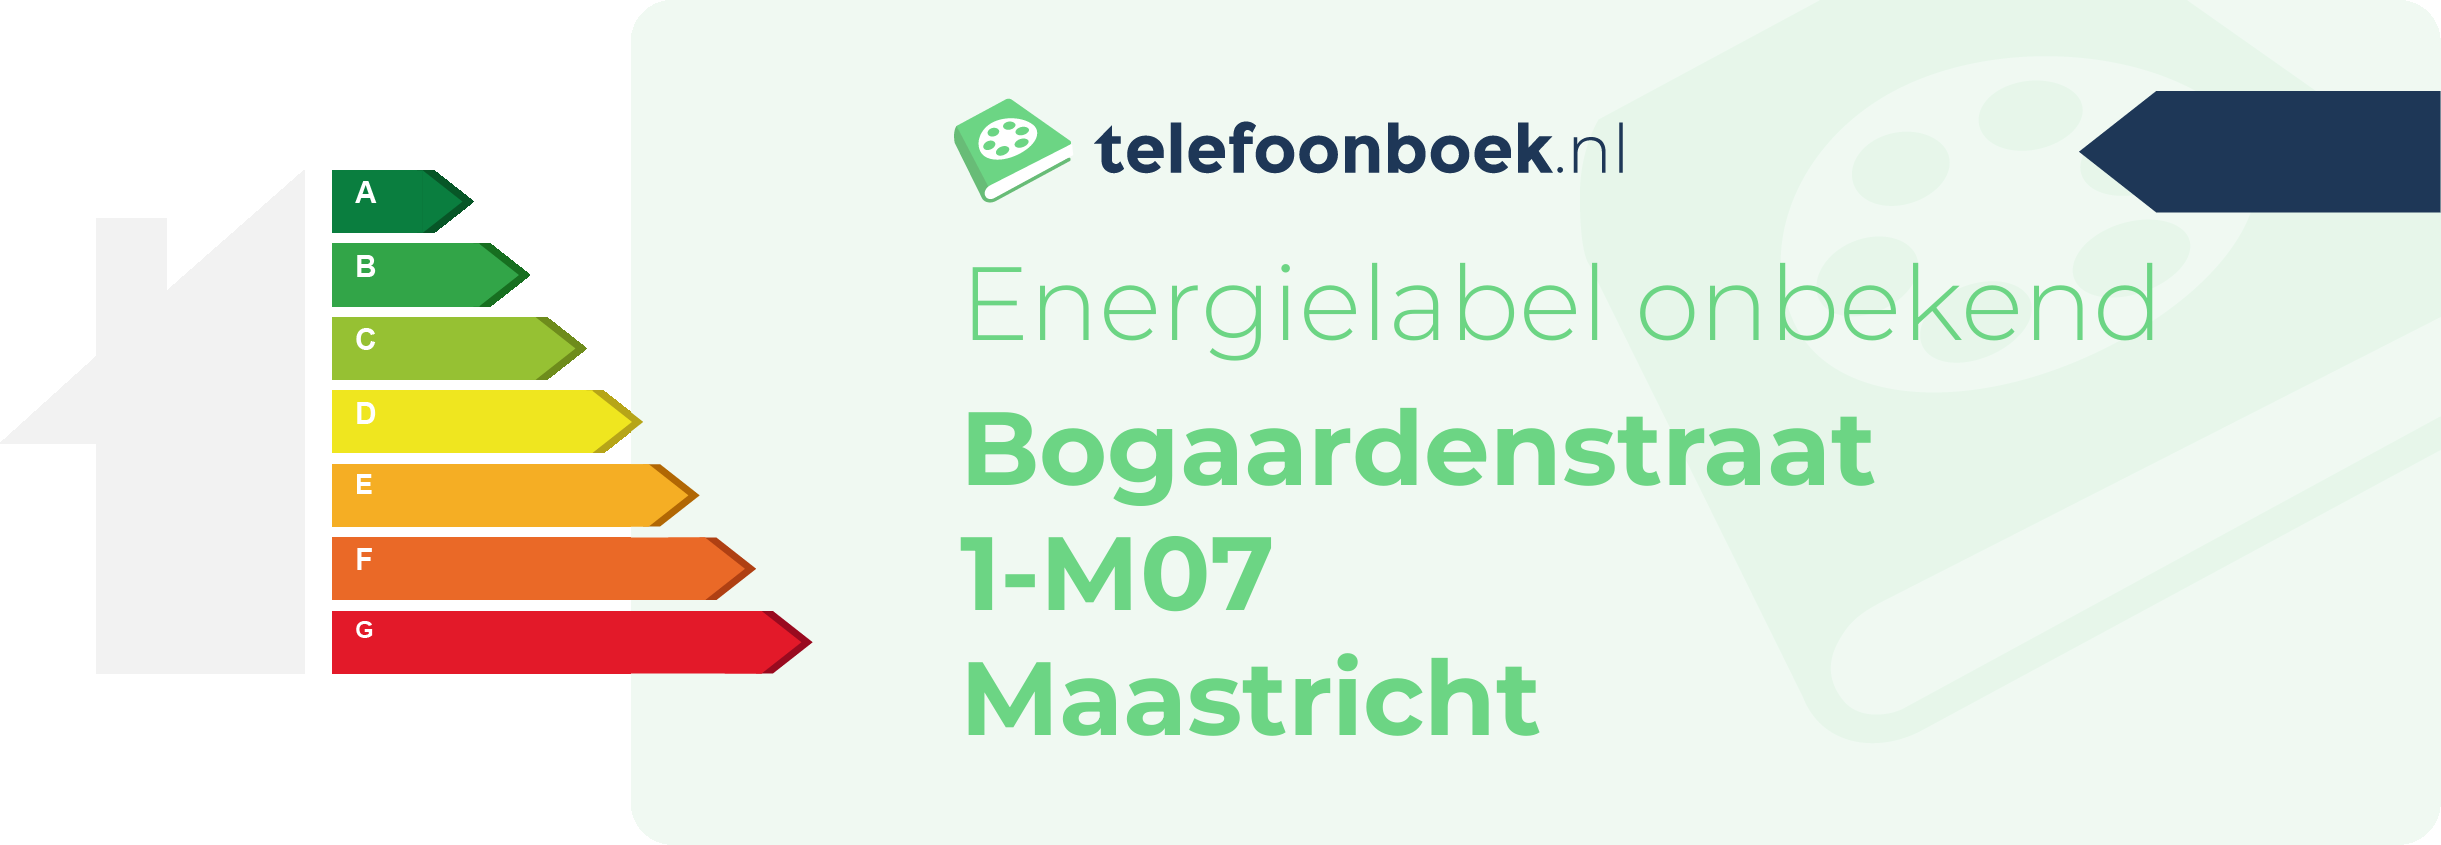 Energielabel Bogaardenstraat 1-M07 Maastricht